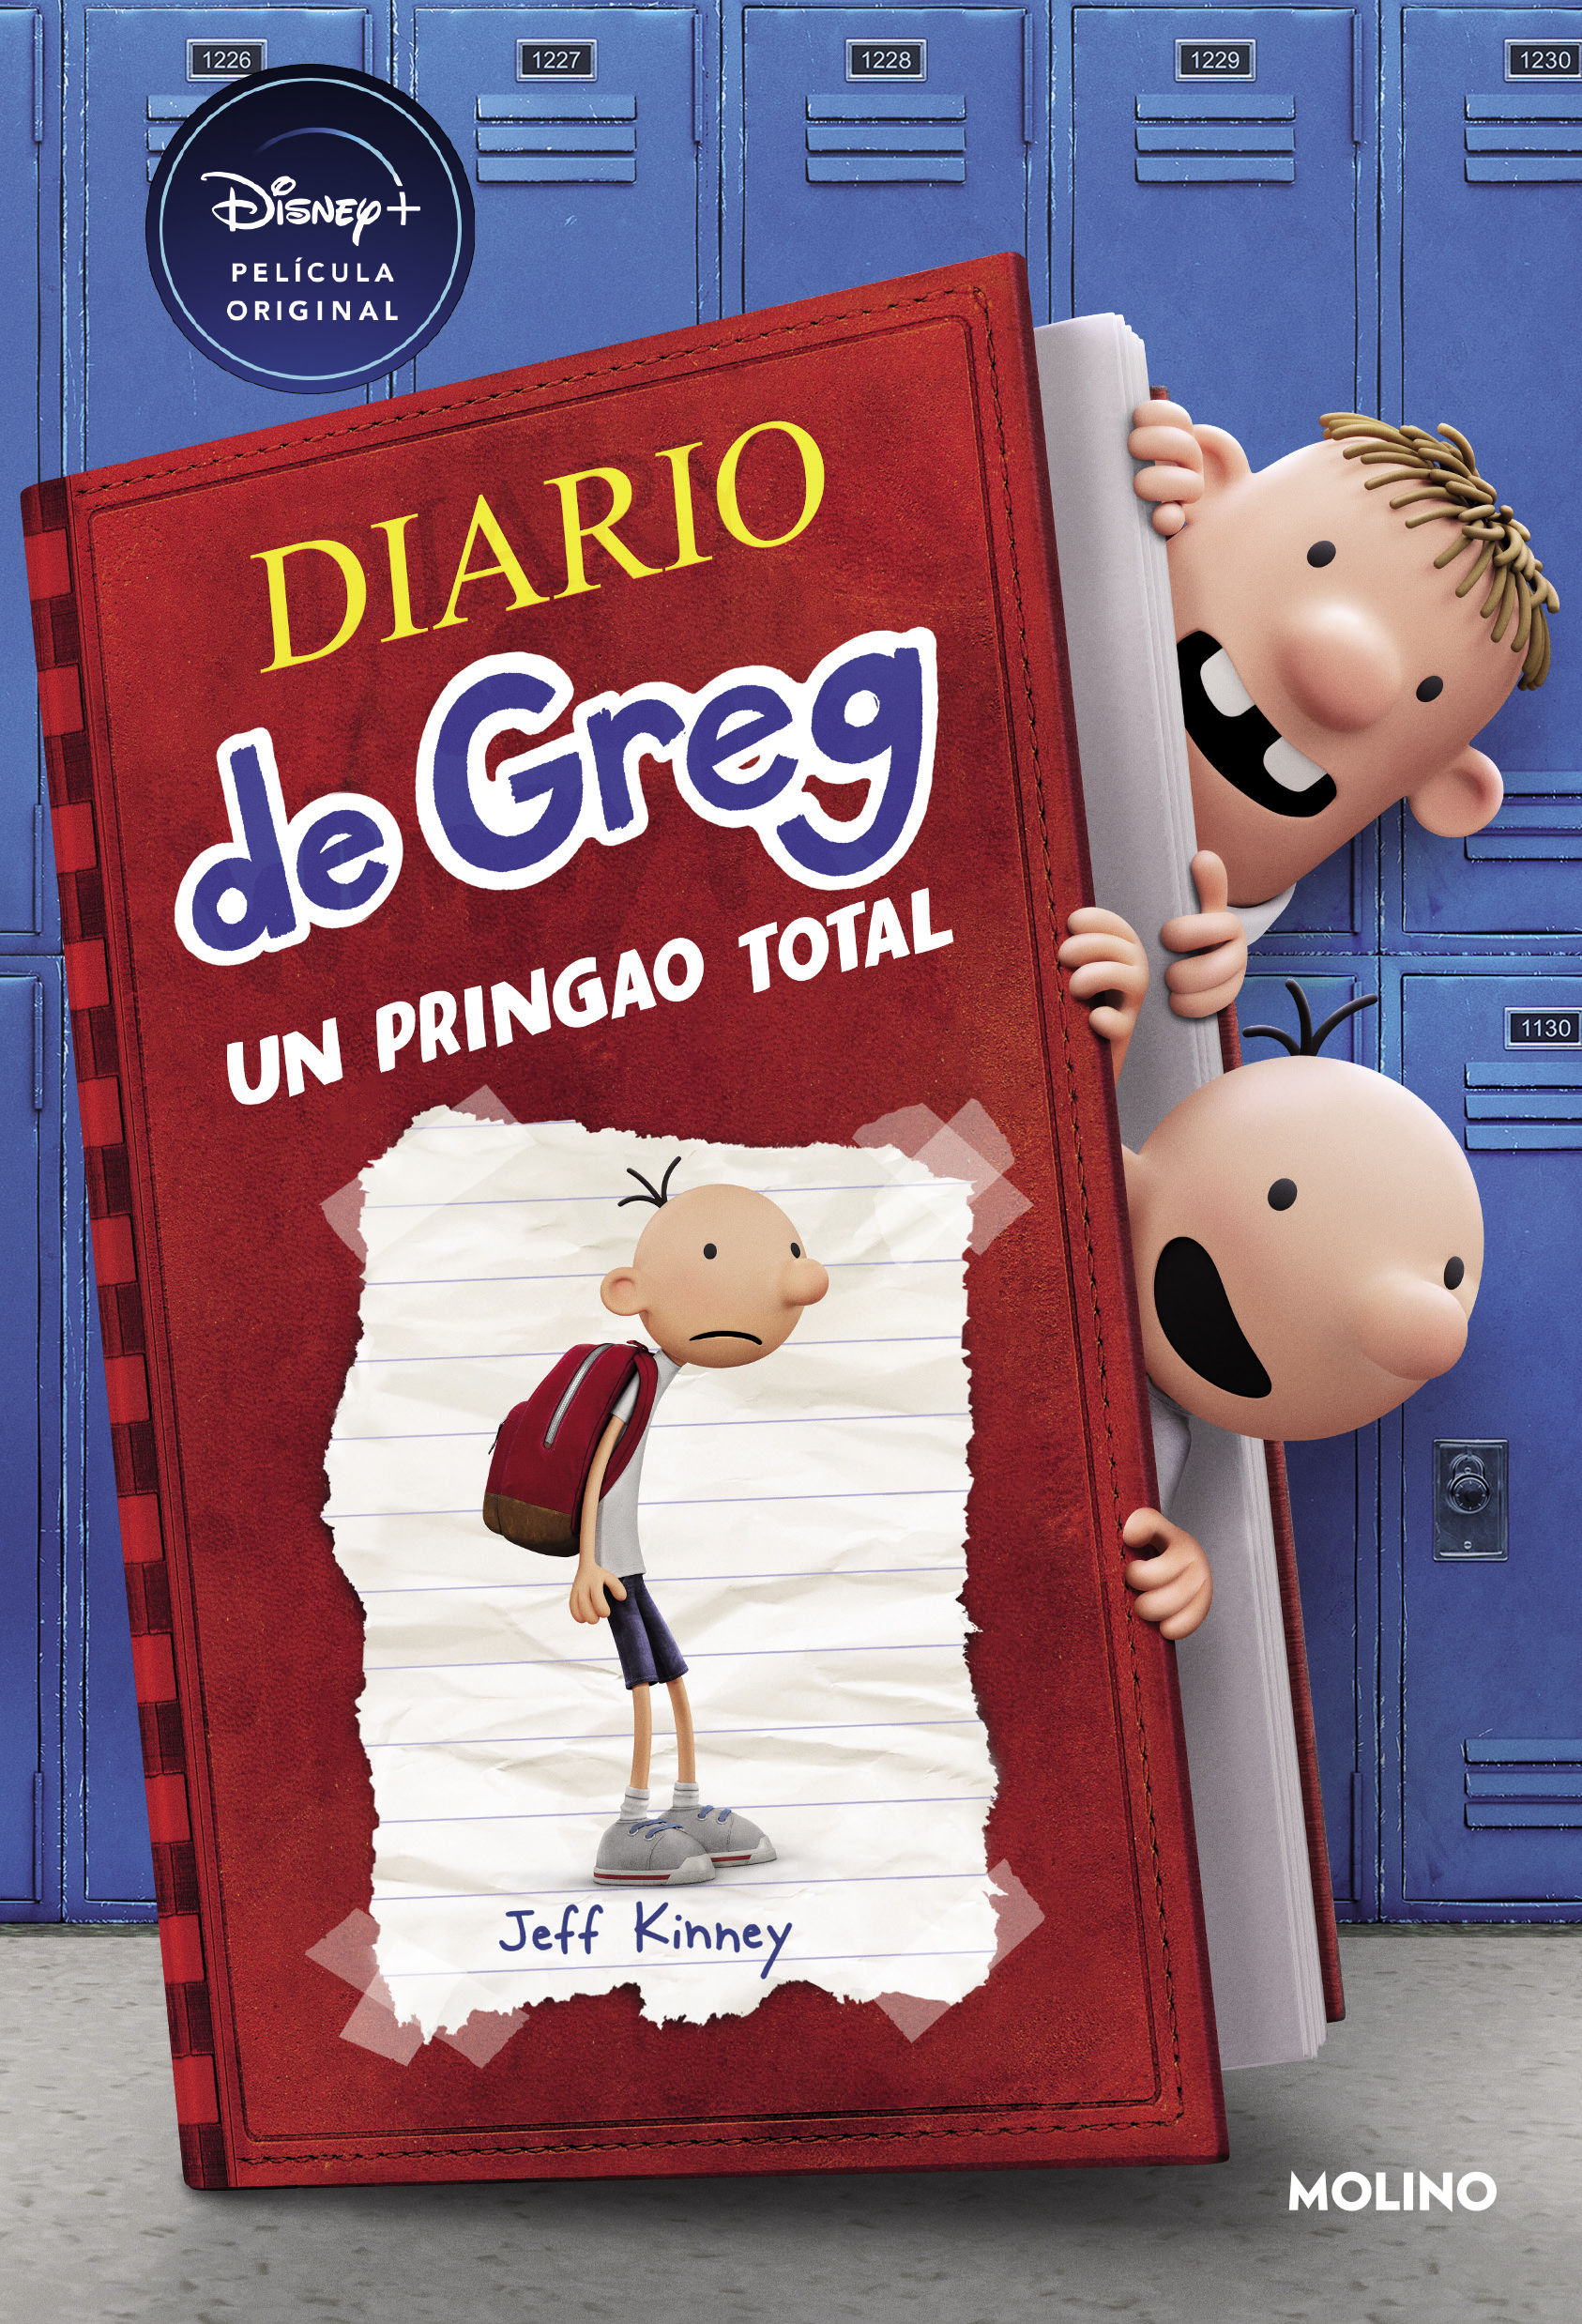 DIARIO DE GREG 1. UN PRINGAO TOTAL (EL LIBRO DE LA PELÍCULA DE DISNEY+)